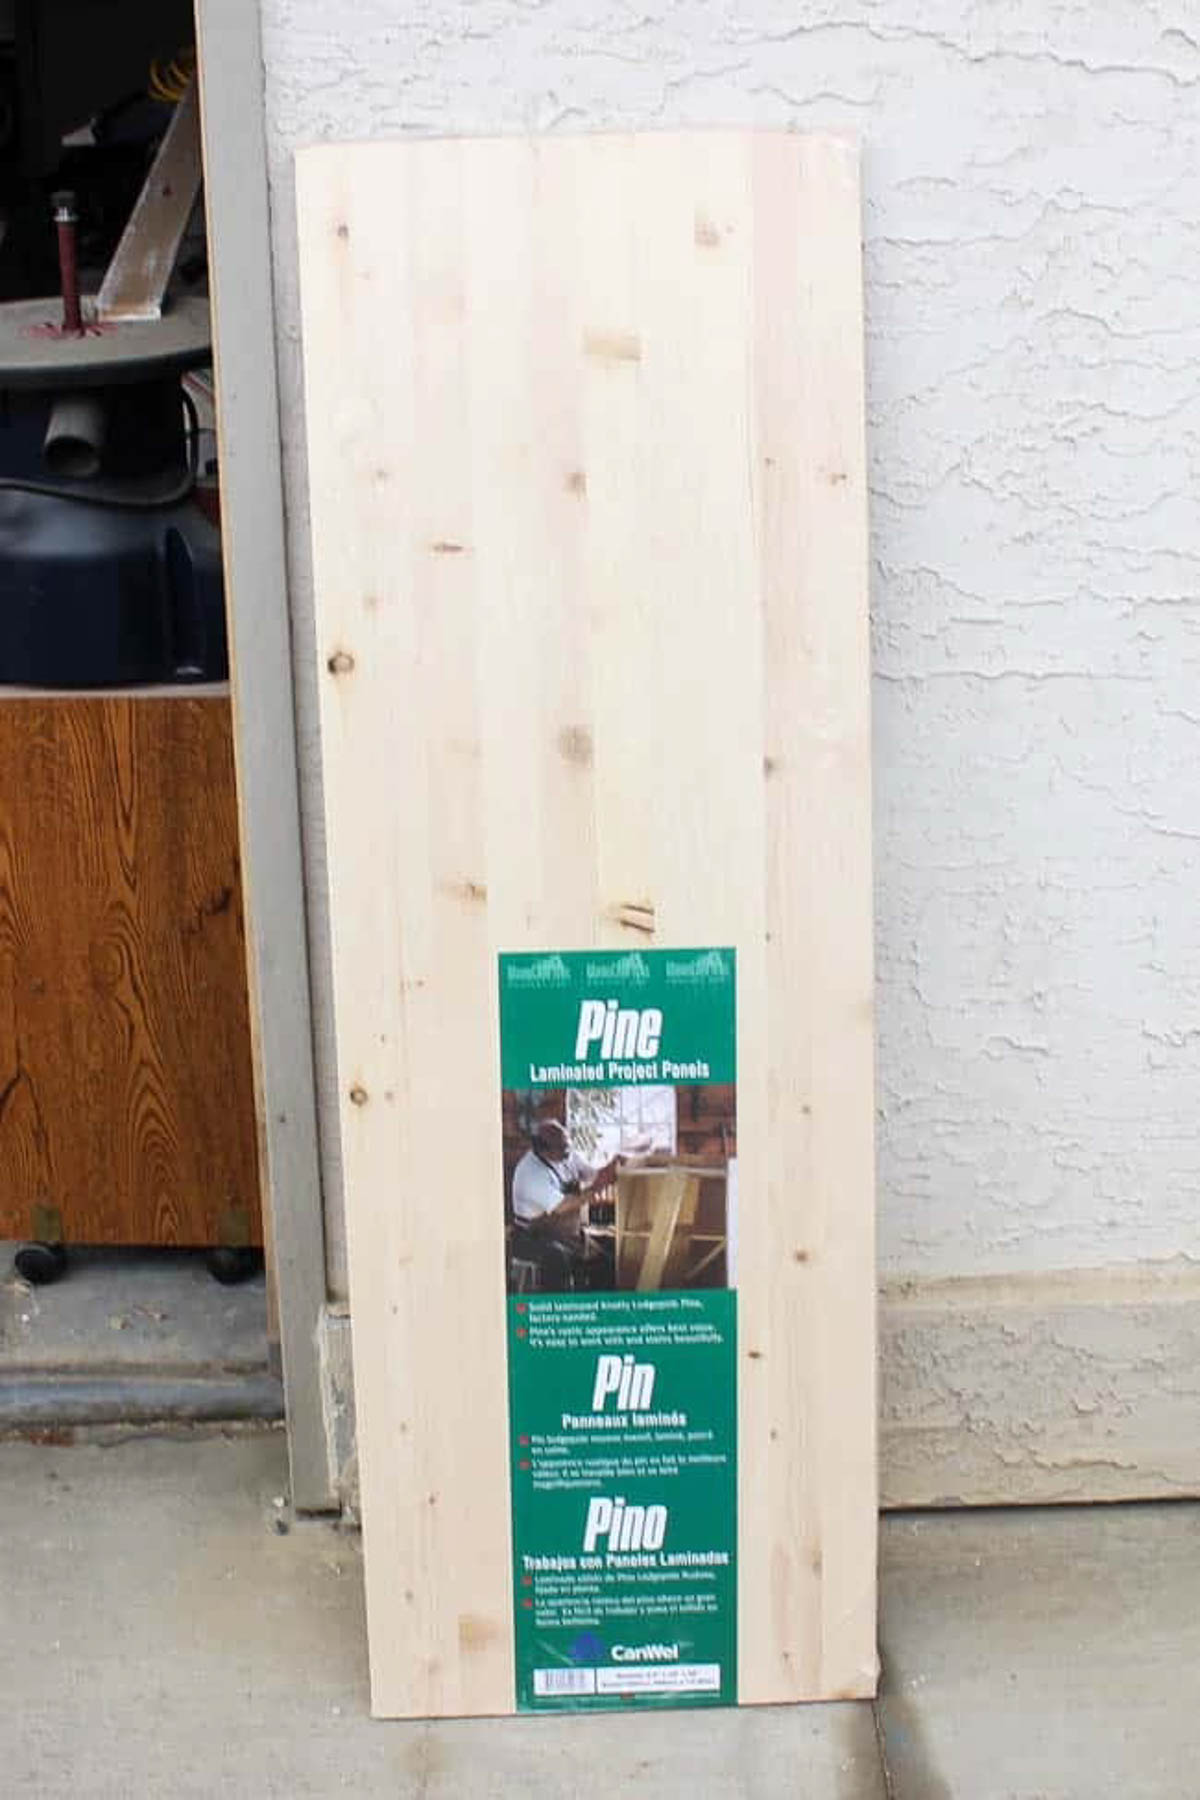 Laminated pine panels for easy floating shelves